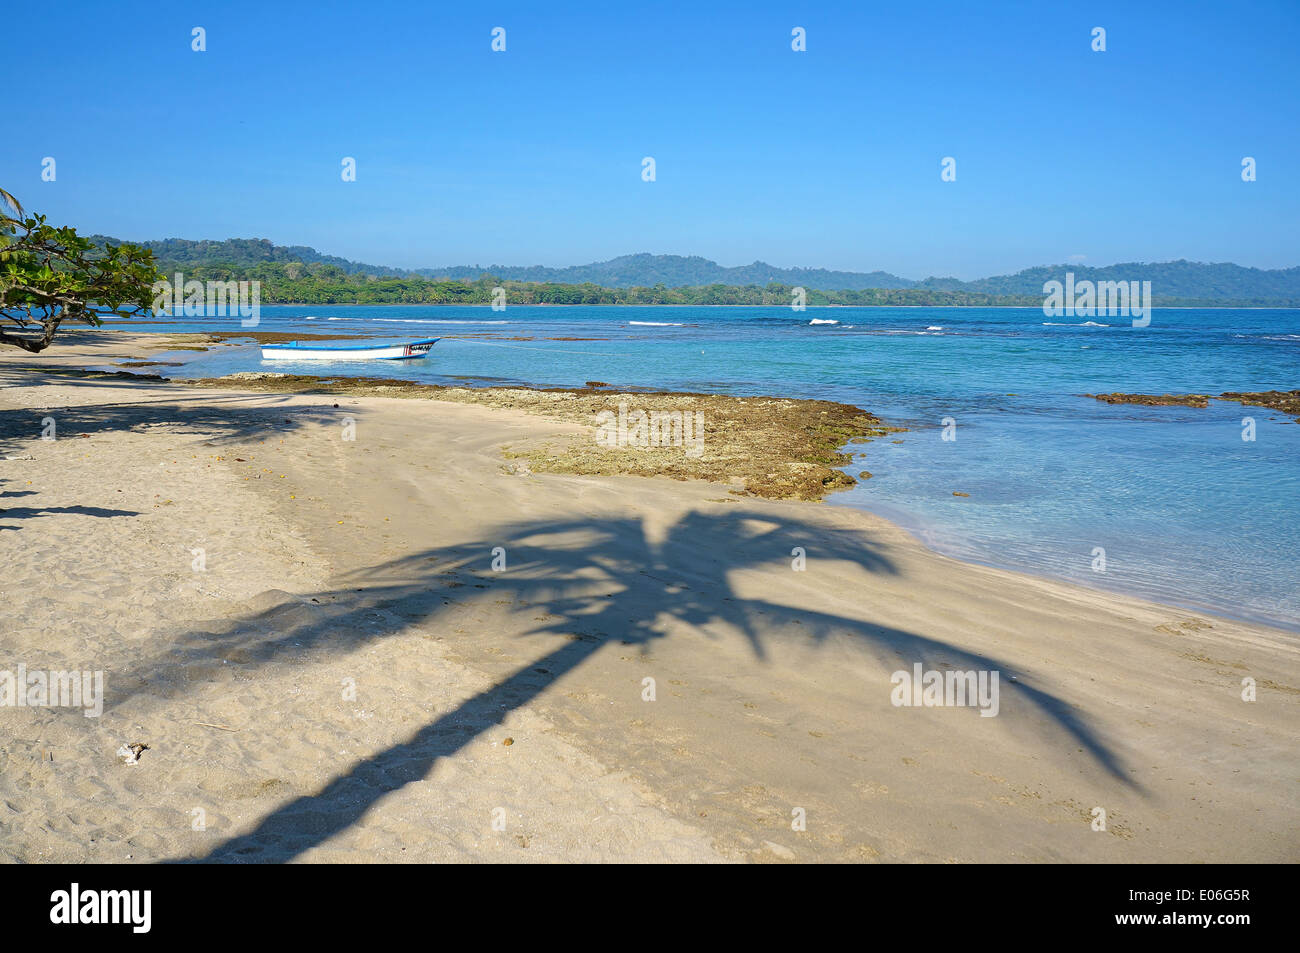 L'ombre de palmier sur une plage tranquille, la mer des Caraïbes, Puerto Viejo de Talamanca, Costa Rica Banque D'Images